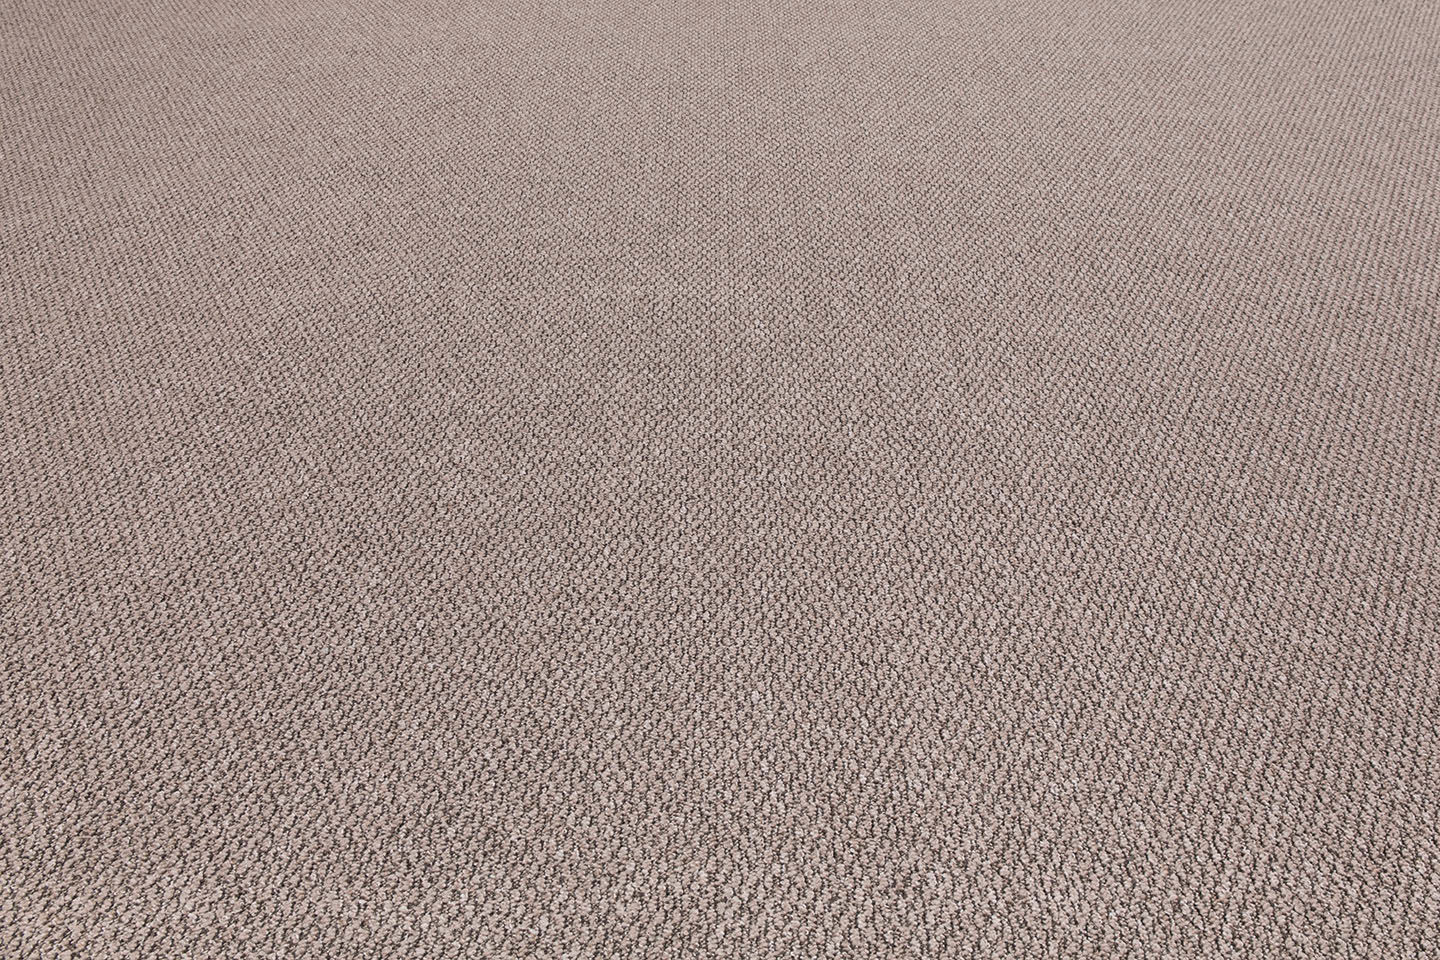 Metrážový koberec DERBY hnědý